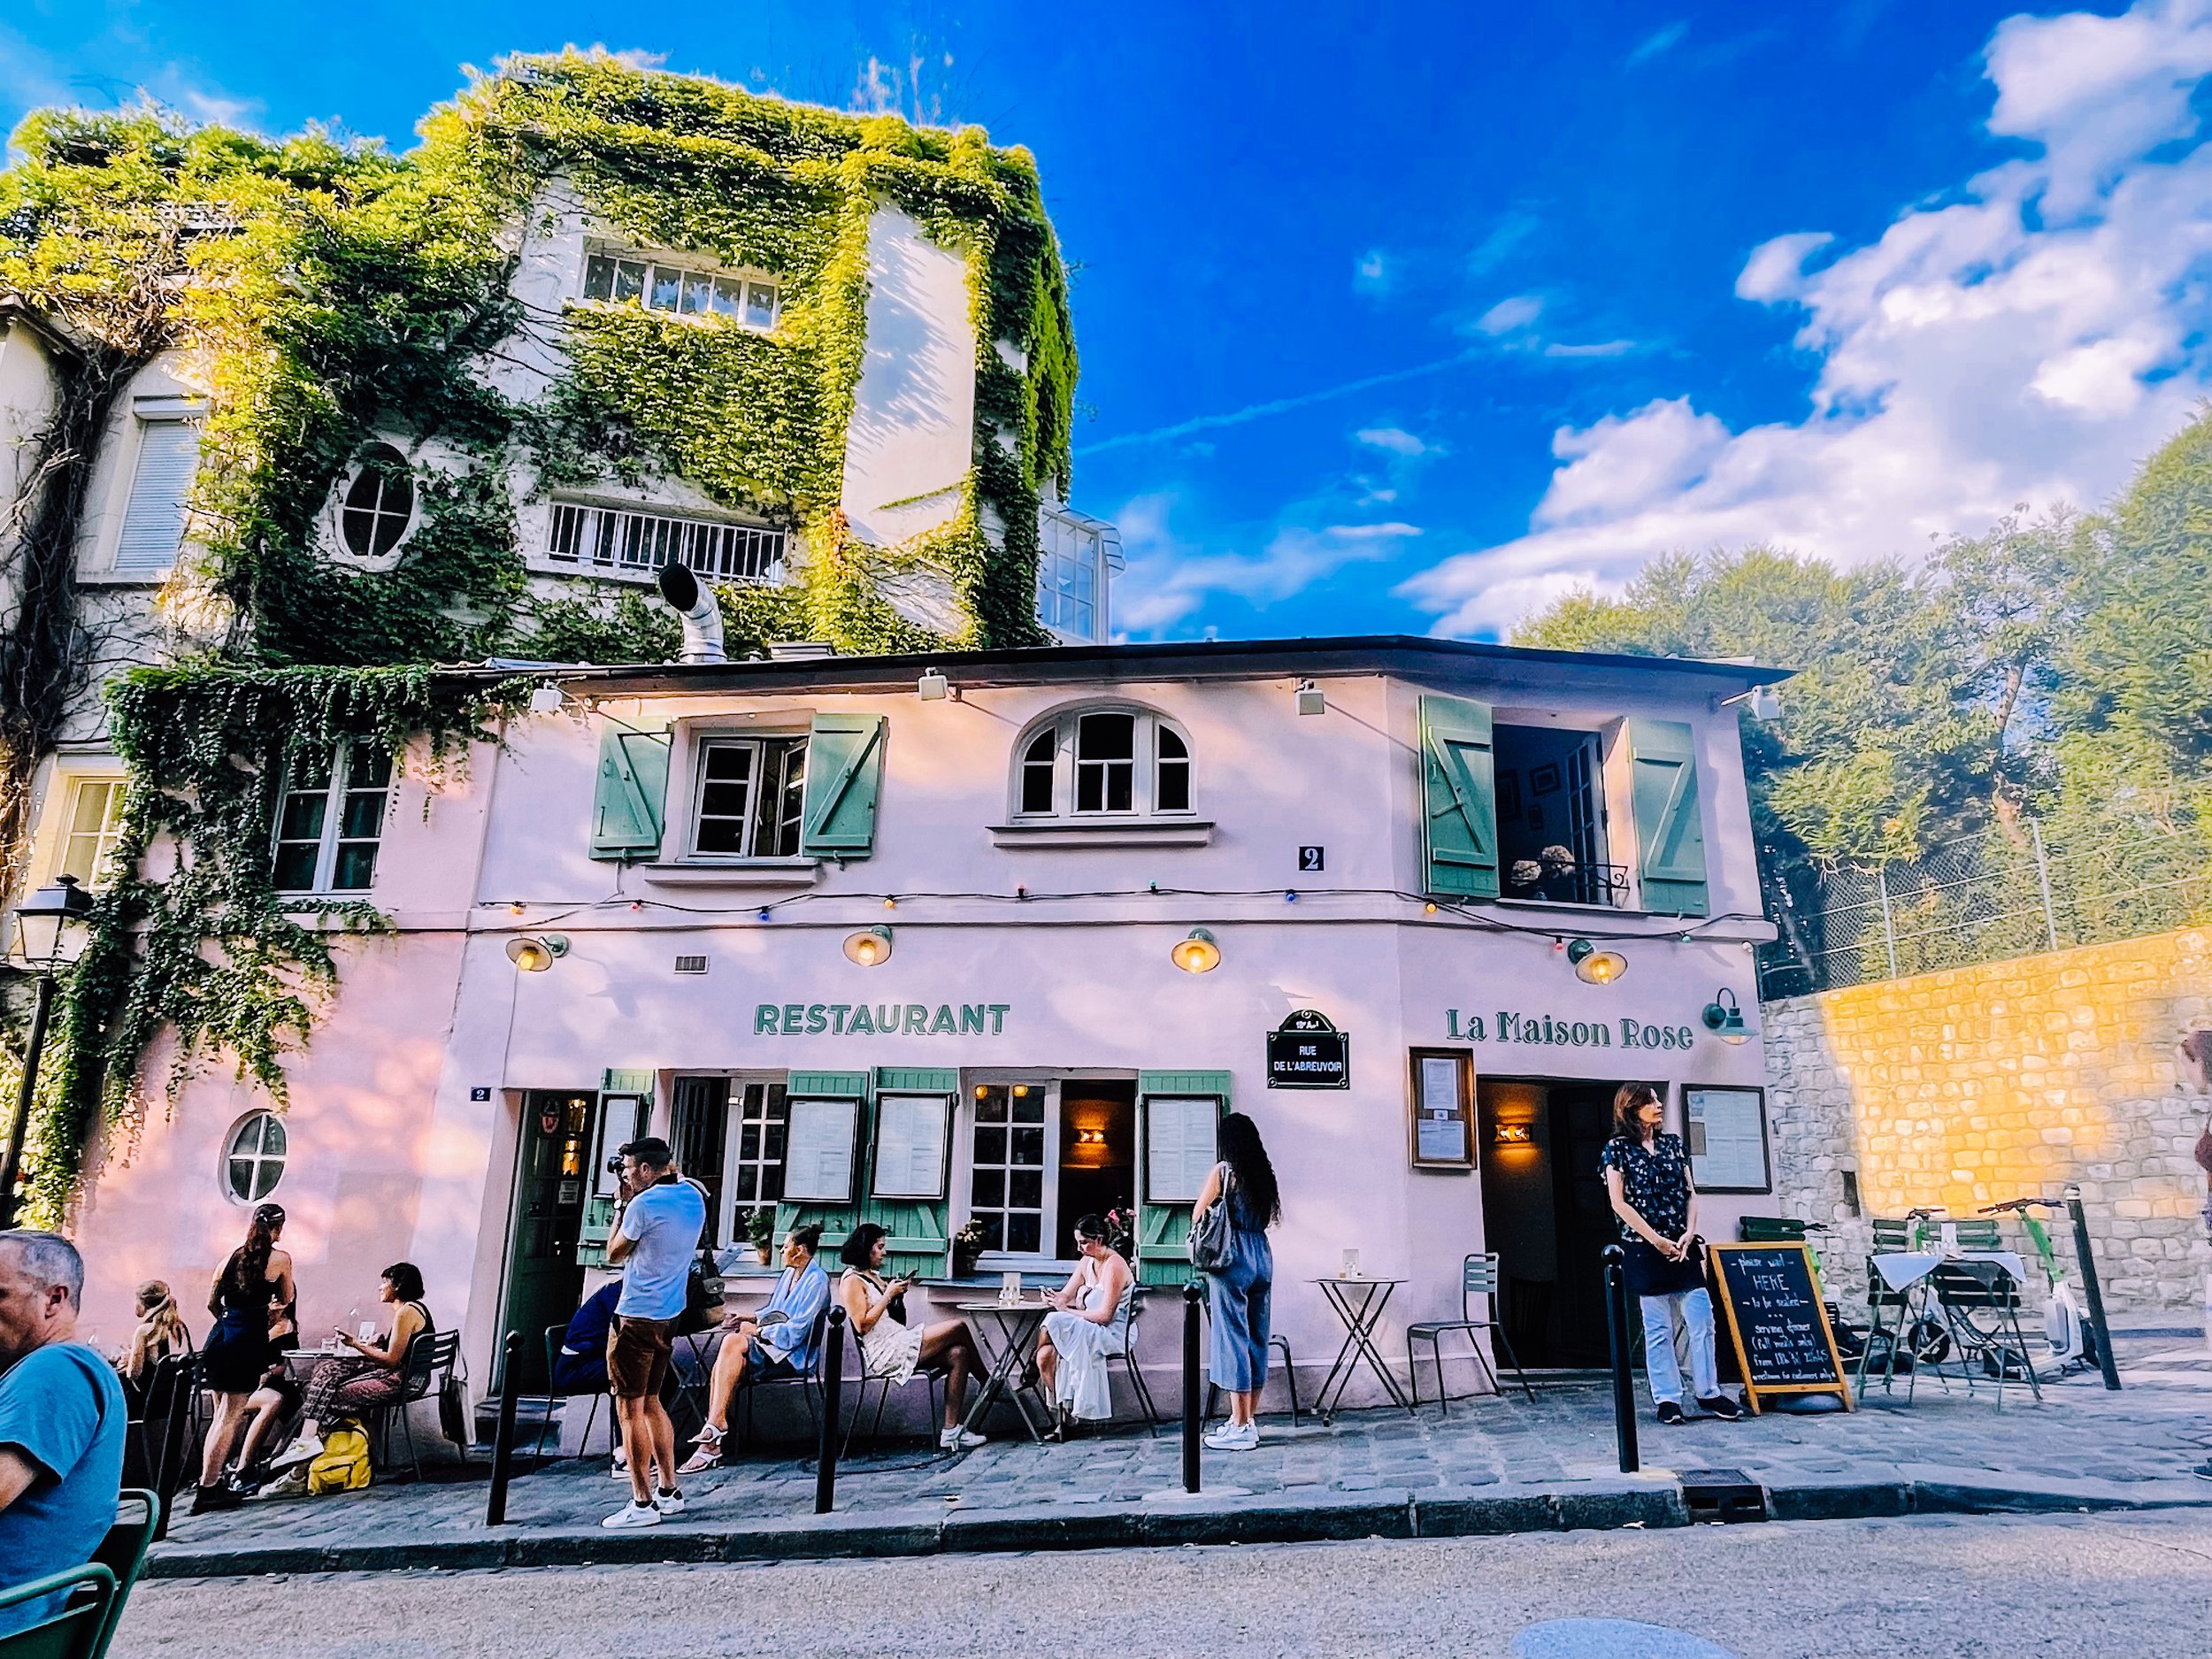 Joyful Urbanist_Paris Street Cafe 1M.jpg